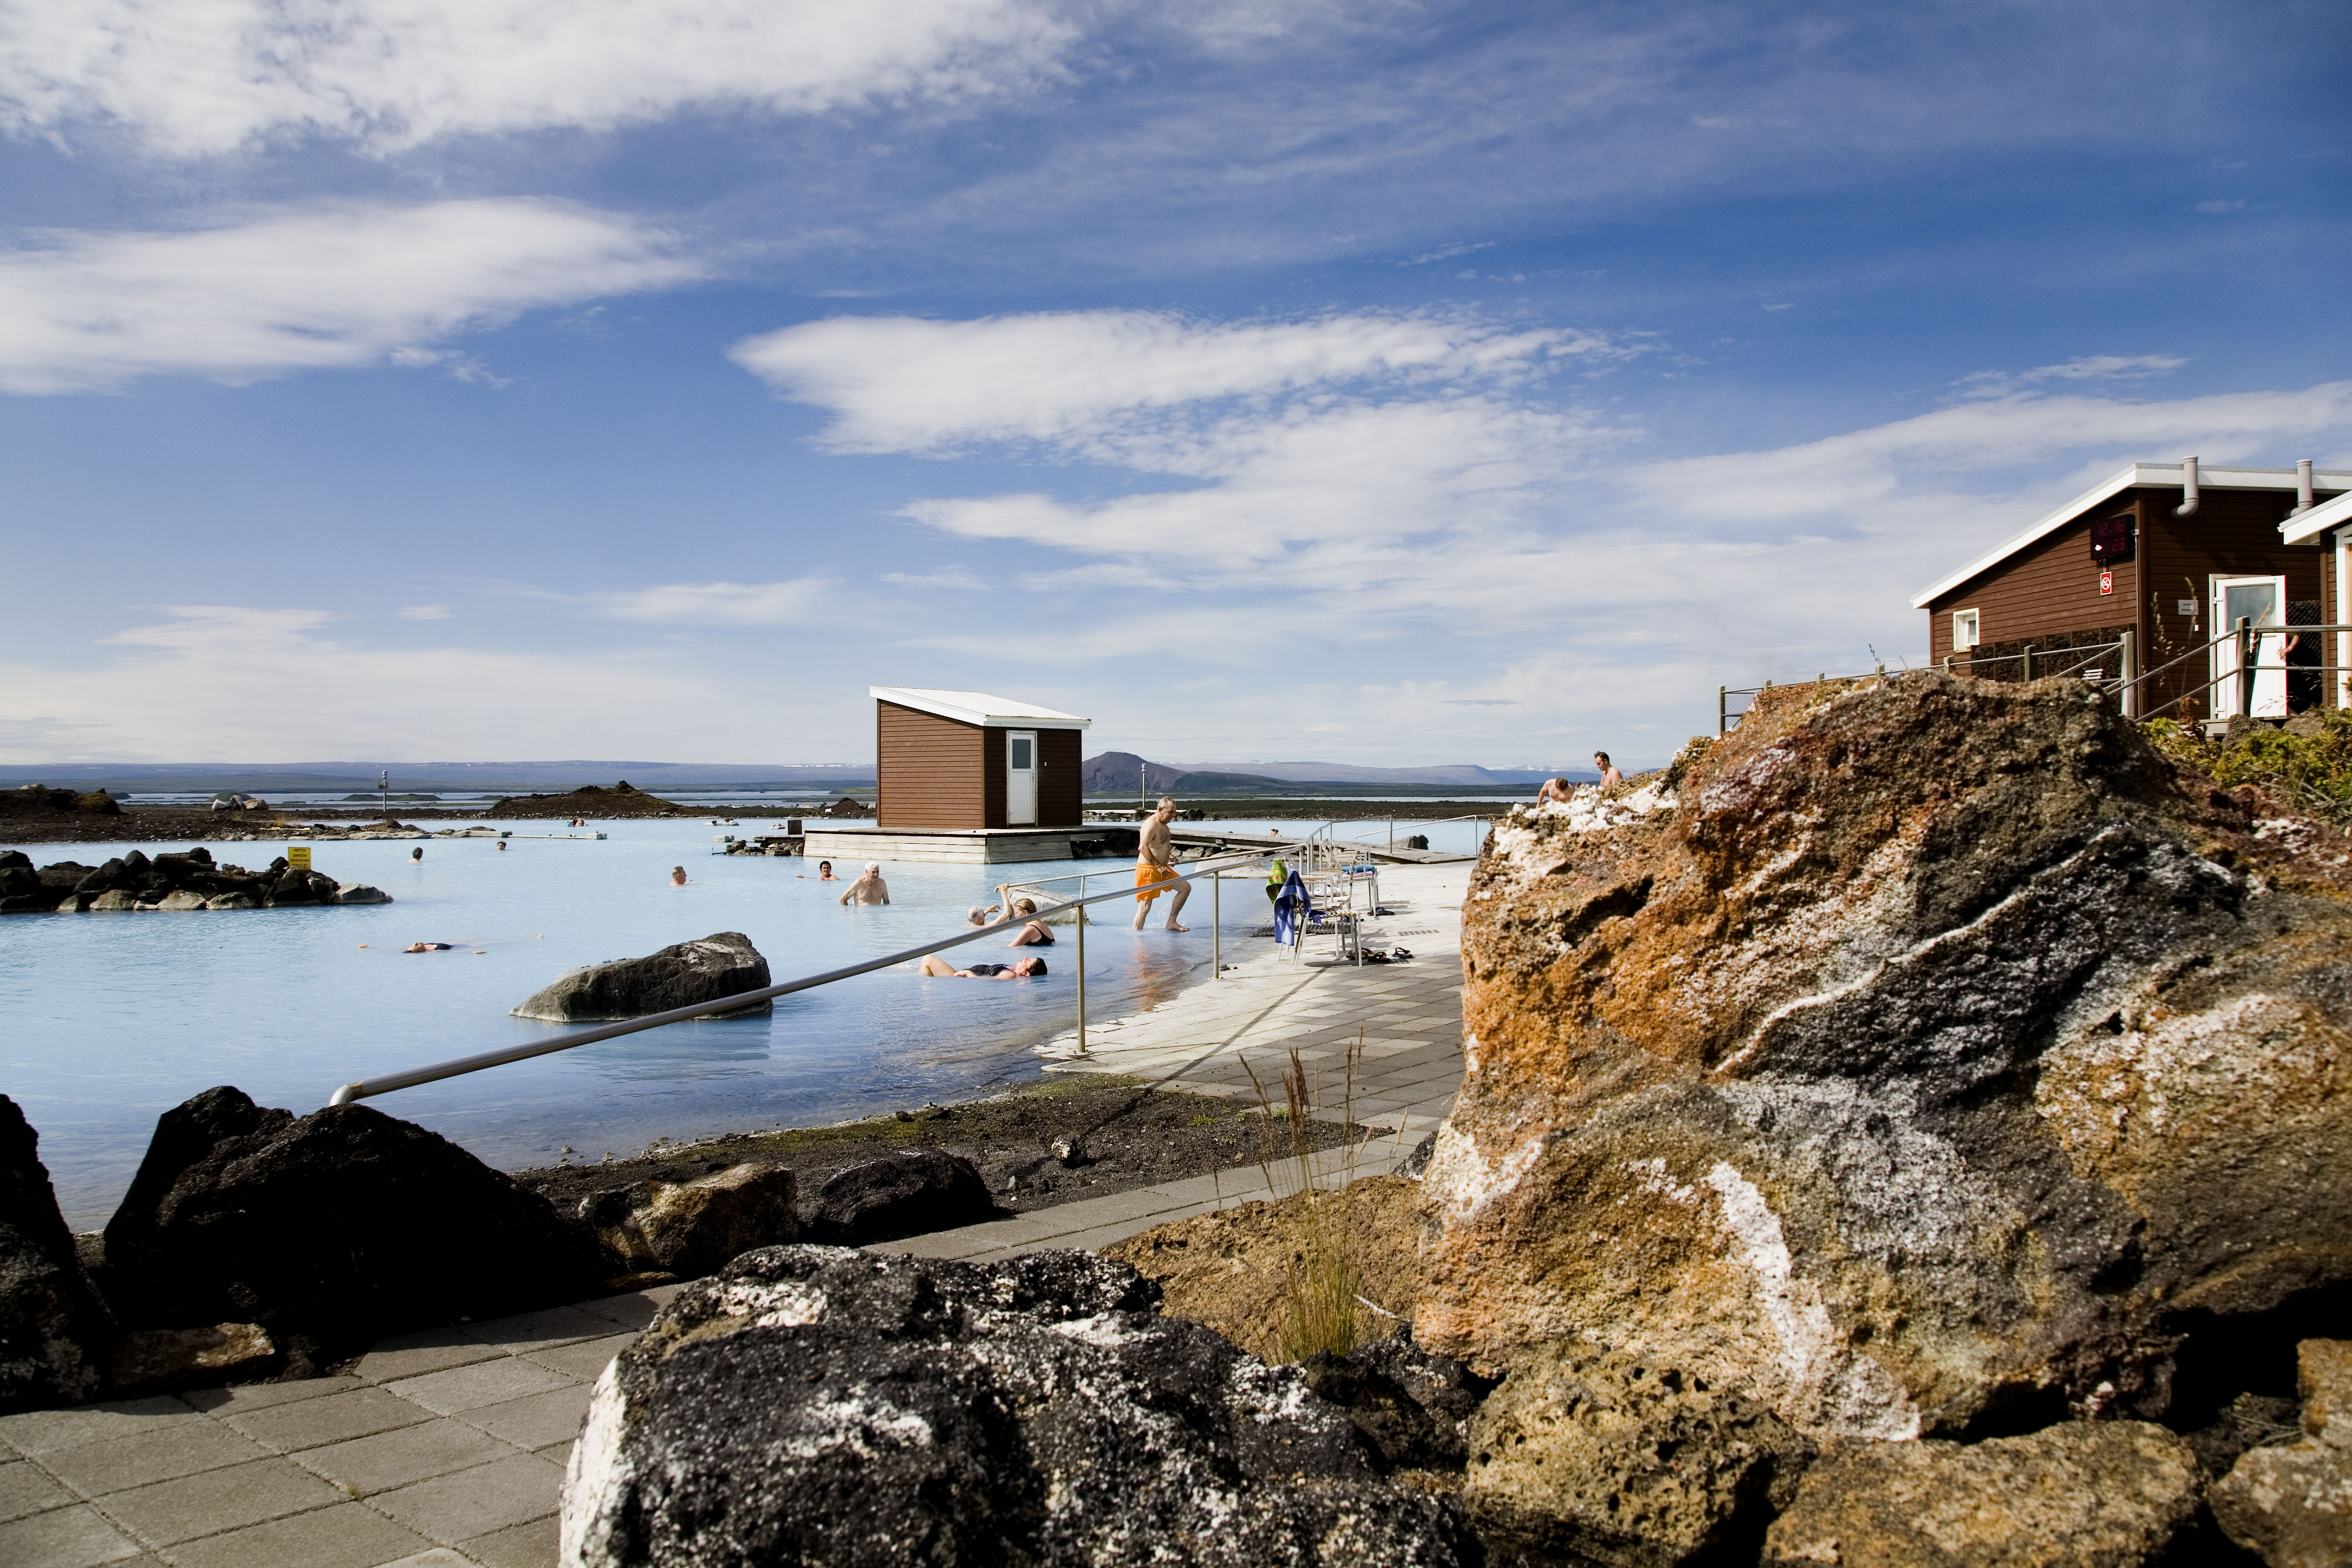 2021年冰岛温泉终极攻略丨25个温泉的信息、门票、地址及新冠肺炎疫情开放情况| Guide to Iceland